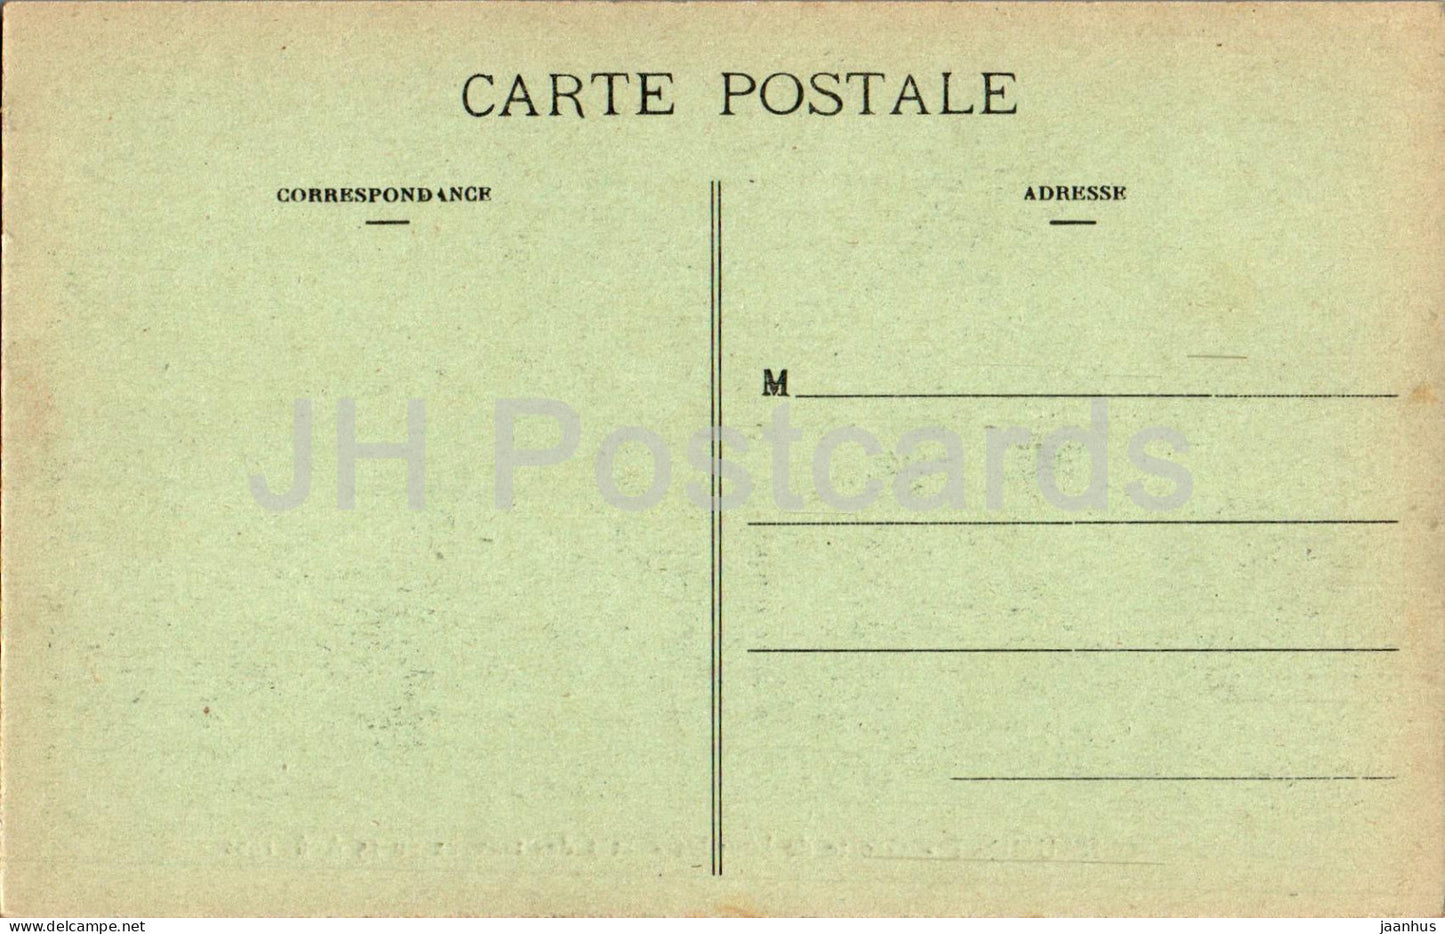 Chaumont - Grotte de Lourdes - Etat des travaux au 15 août 1922 - grotte - carte postale ancienne - France - occasion 